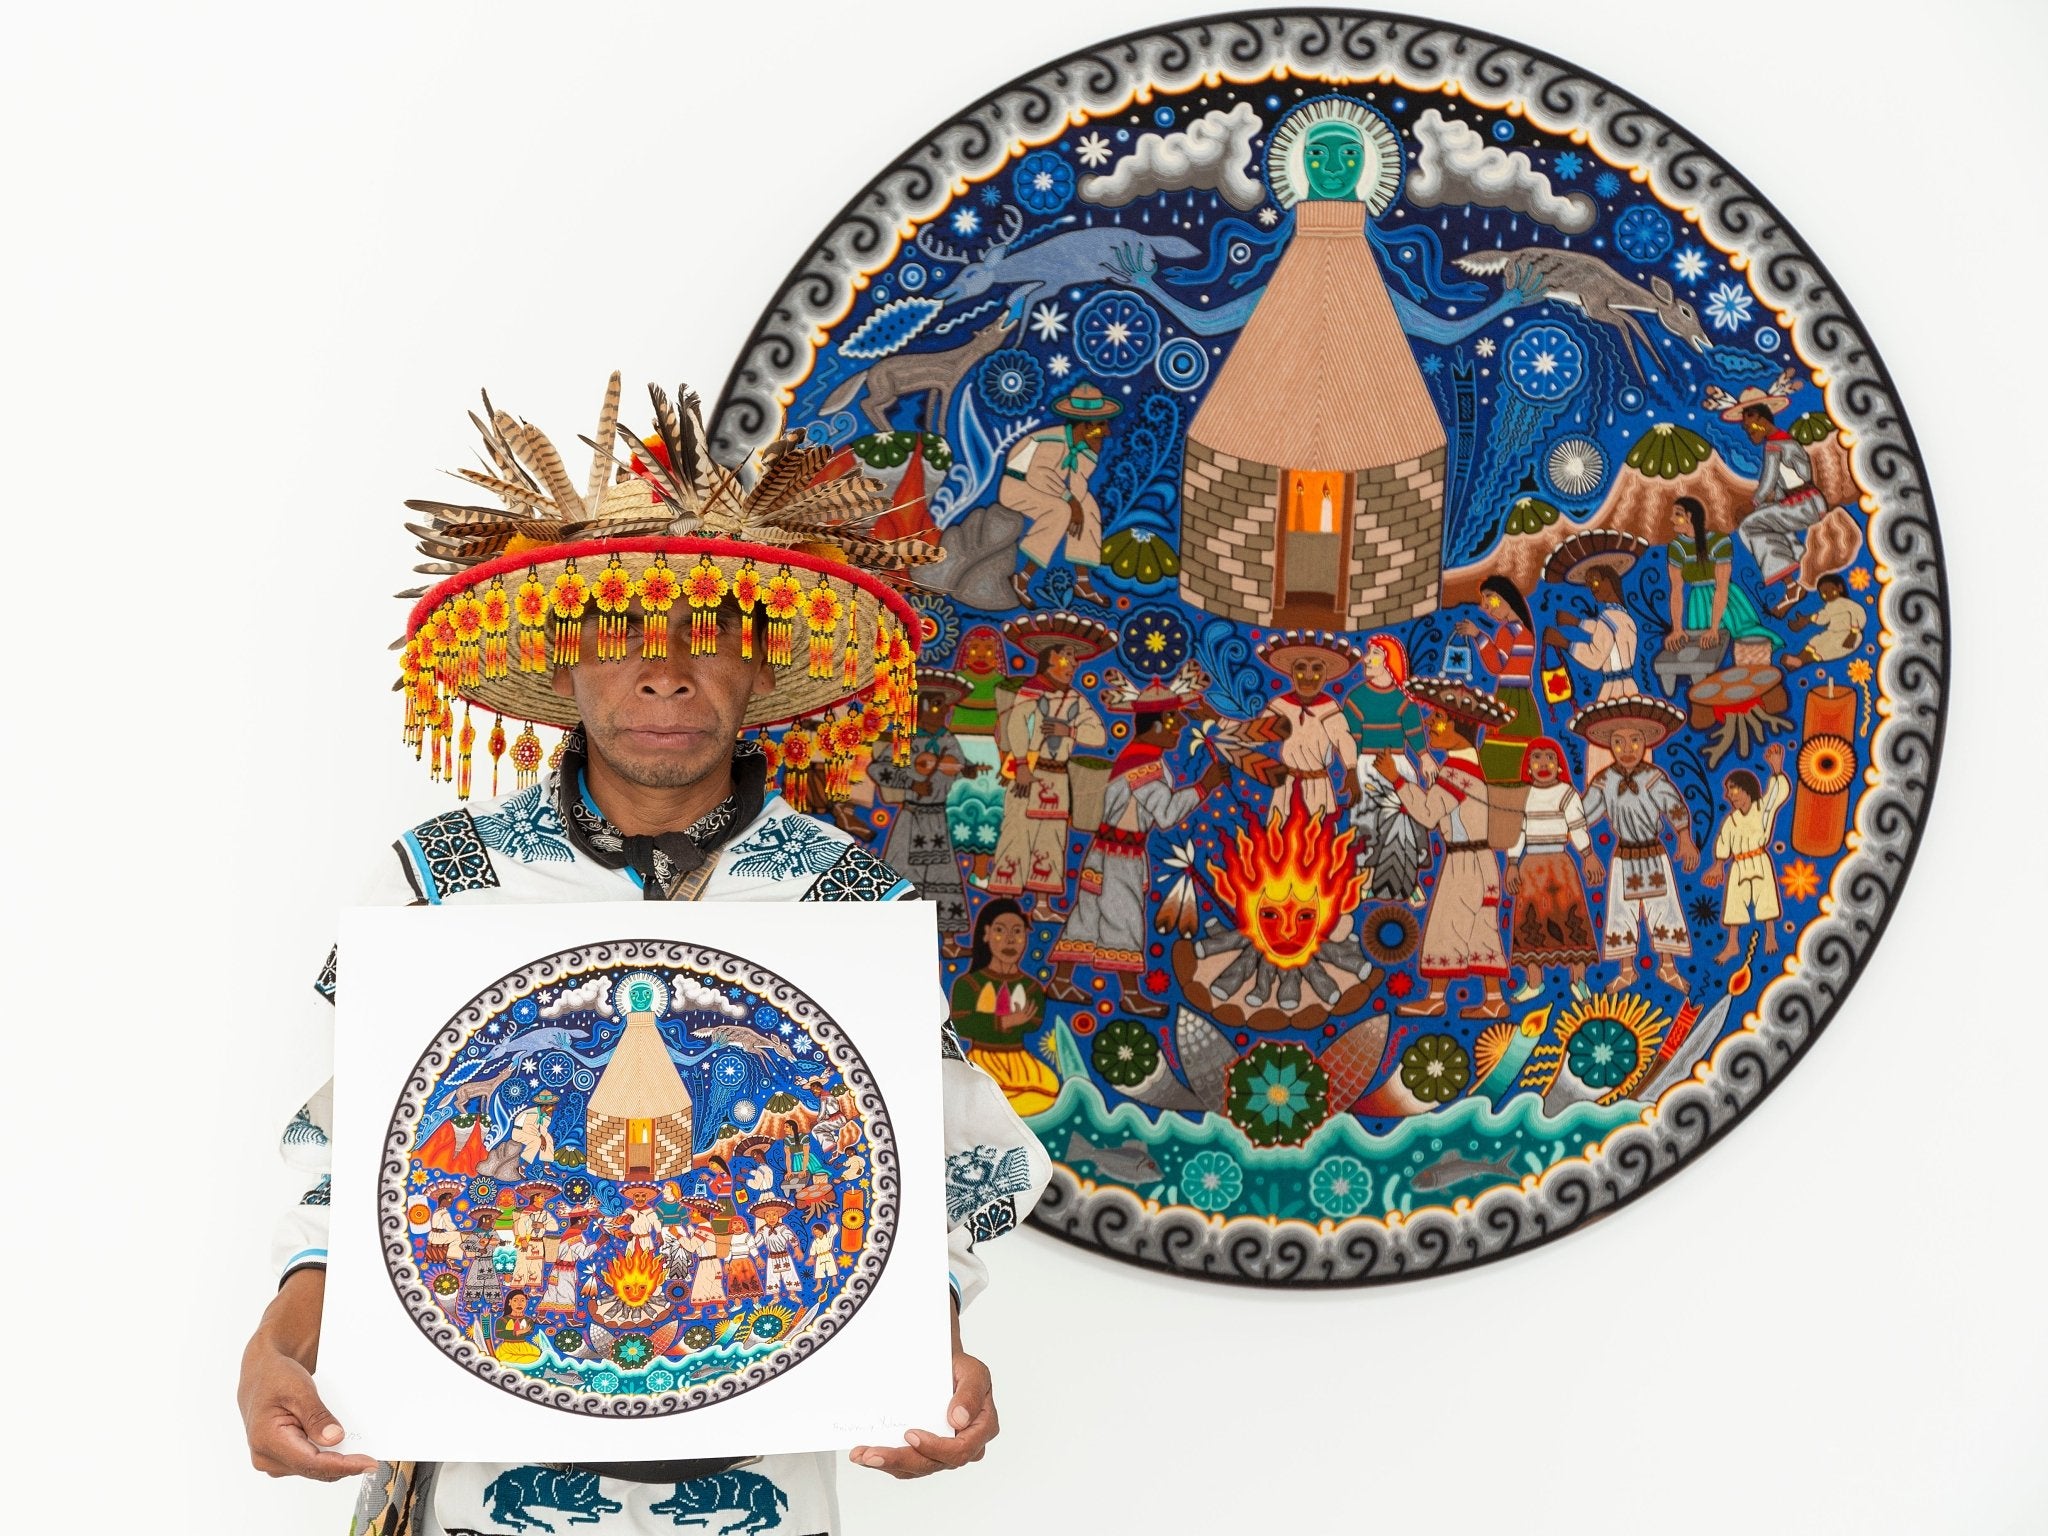 Hikuri Neixa - Danza del peyote en centro ceremonial - 45 x 45 cm. - 18 x 18 in. - Arte Huichol - Marakame